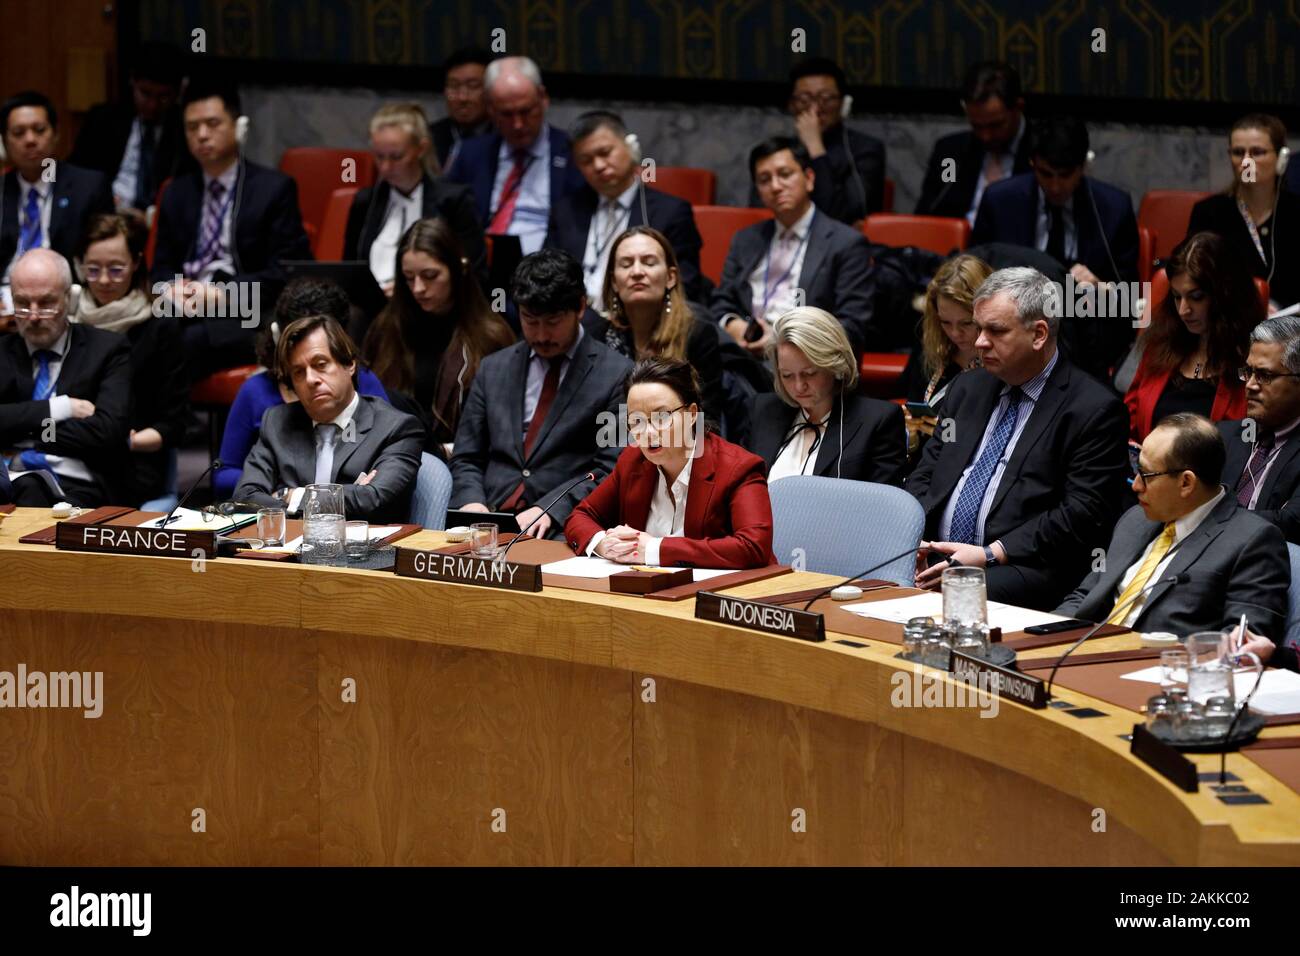 (200109) -- ORGANISATION DES NATIONS UNIES, le 9 janvier 2020 (Xinhua) -- Michelle Muntefering (C, à l'avant), l'Allemand Ministre d'État au Ministère fédéral des affaires étrangères, s'adresse à un débat ouvert du Conseil de sécurité sur le thème de "maintenance de la paix et de la sécurité respect de la Charte de l'ONU" au siège des Nations Unies à New York, le 9 janvier, 2020. Le Conseil de sécurité des Nations Unies le jeudi a adopté une déclaration présidentielle appelant tous les États membres à se conformer pleinement à la Charte des Nations Unies, tout en reconnaissant l'importance critique de la Charte pour le maintien de la paix et de la sécurité. (Xinhua/Muzi Li) Banque D'Images